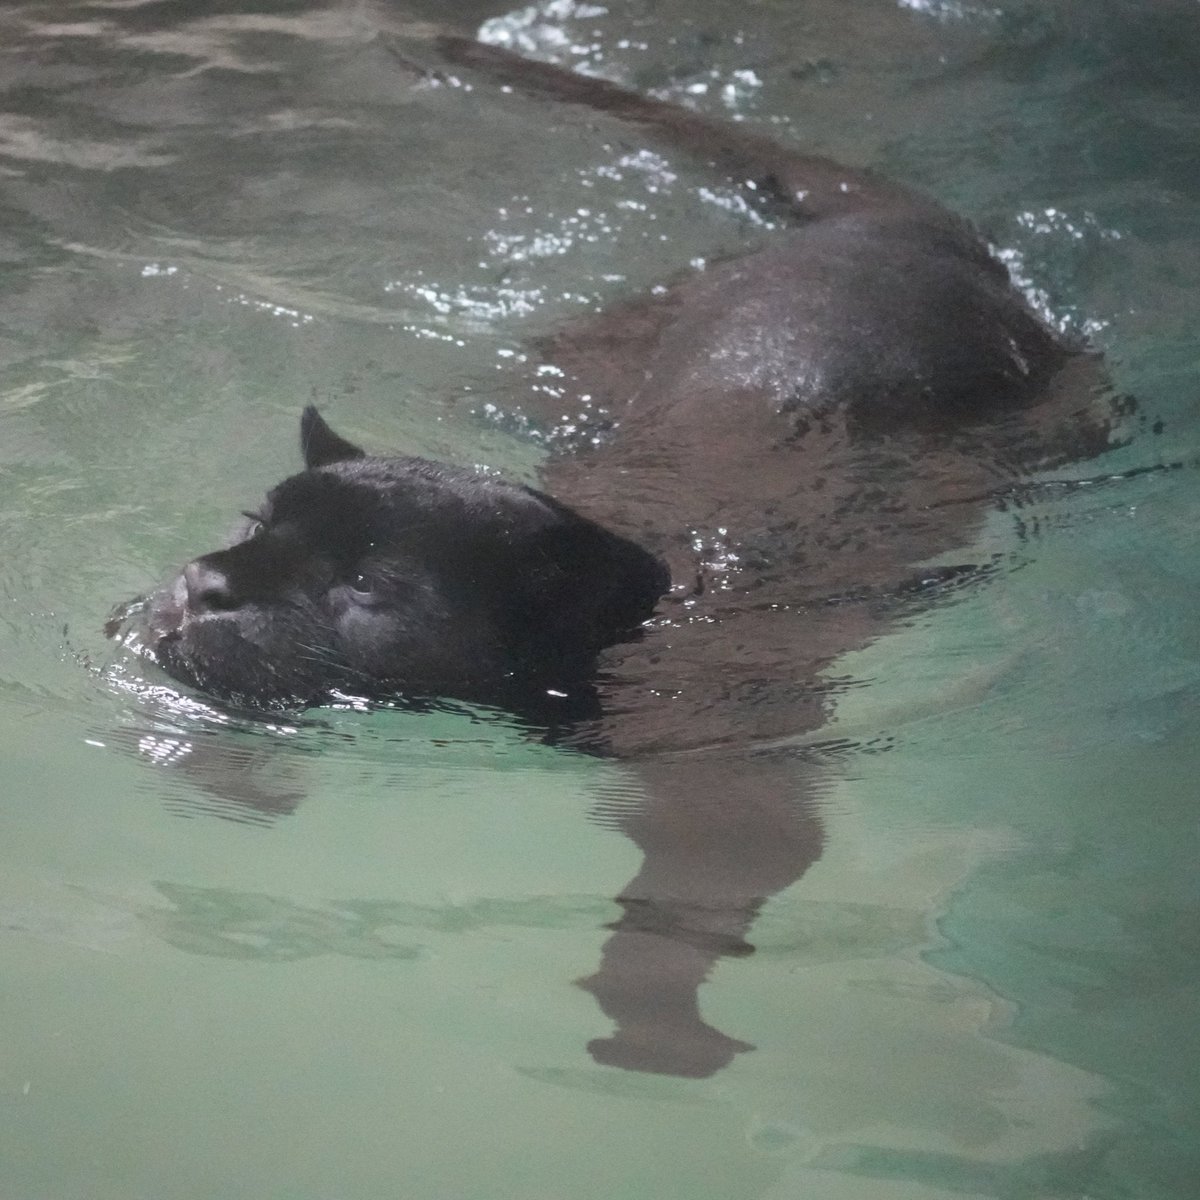 スイスイ泳ぐマヤでおはようございます。#マヤ #ジャガー #東山動植物園